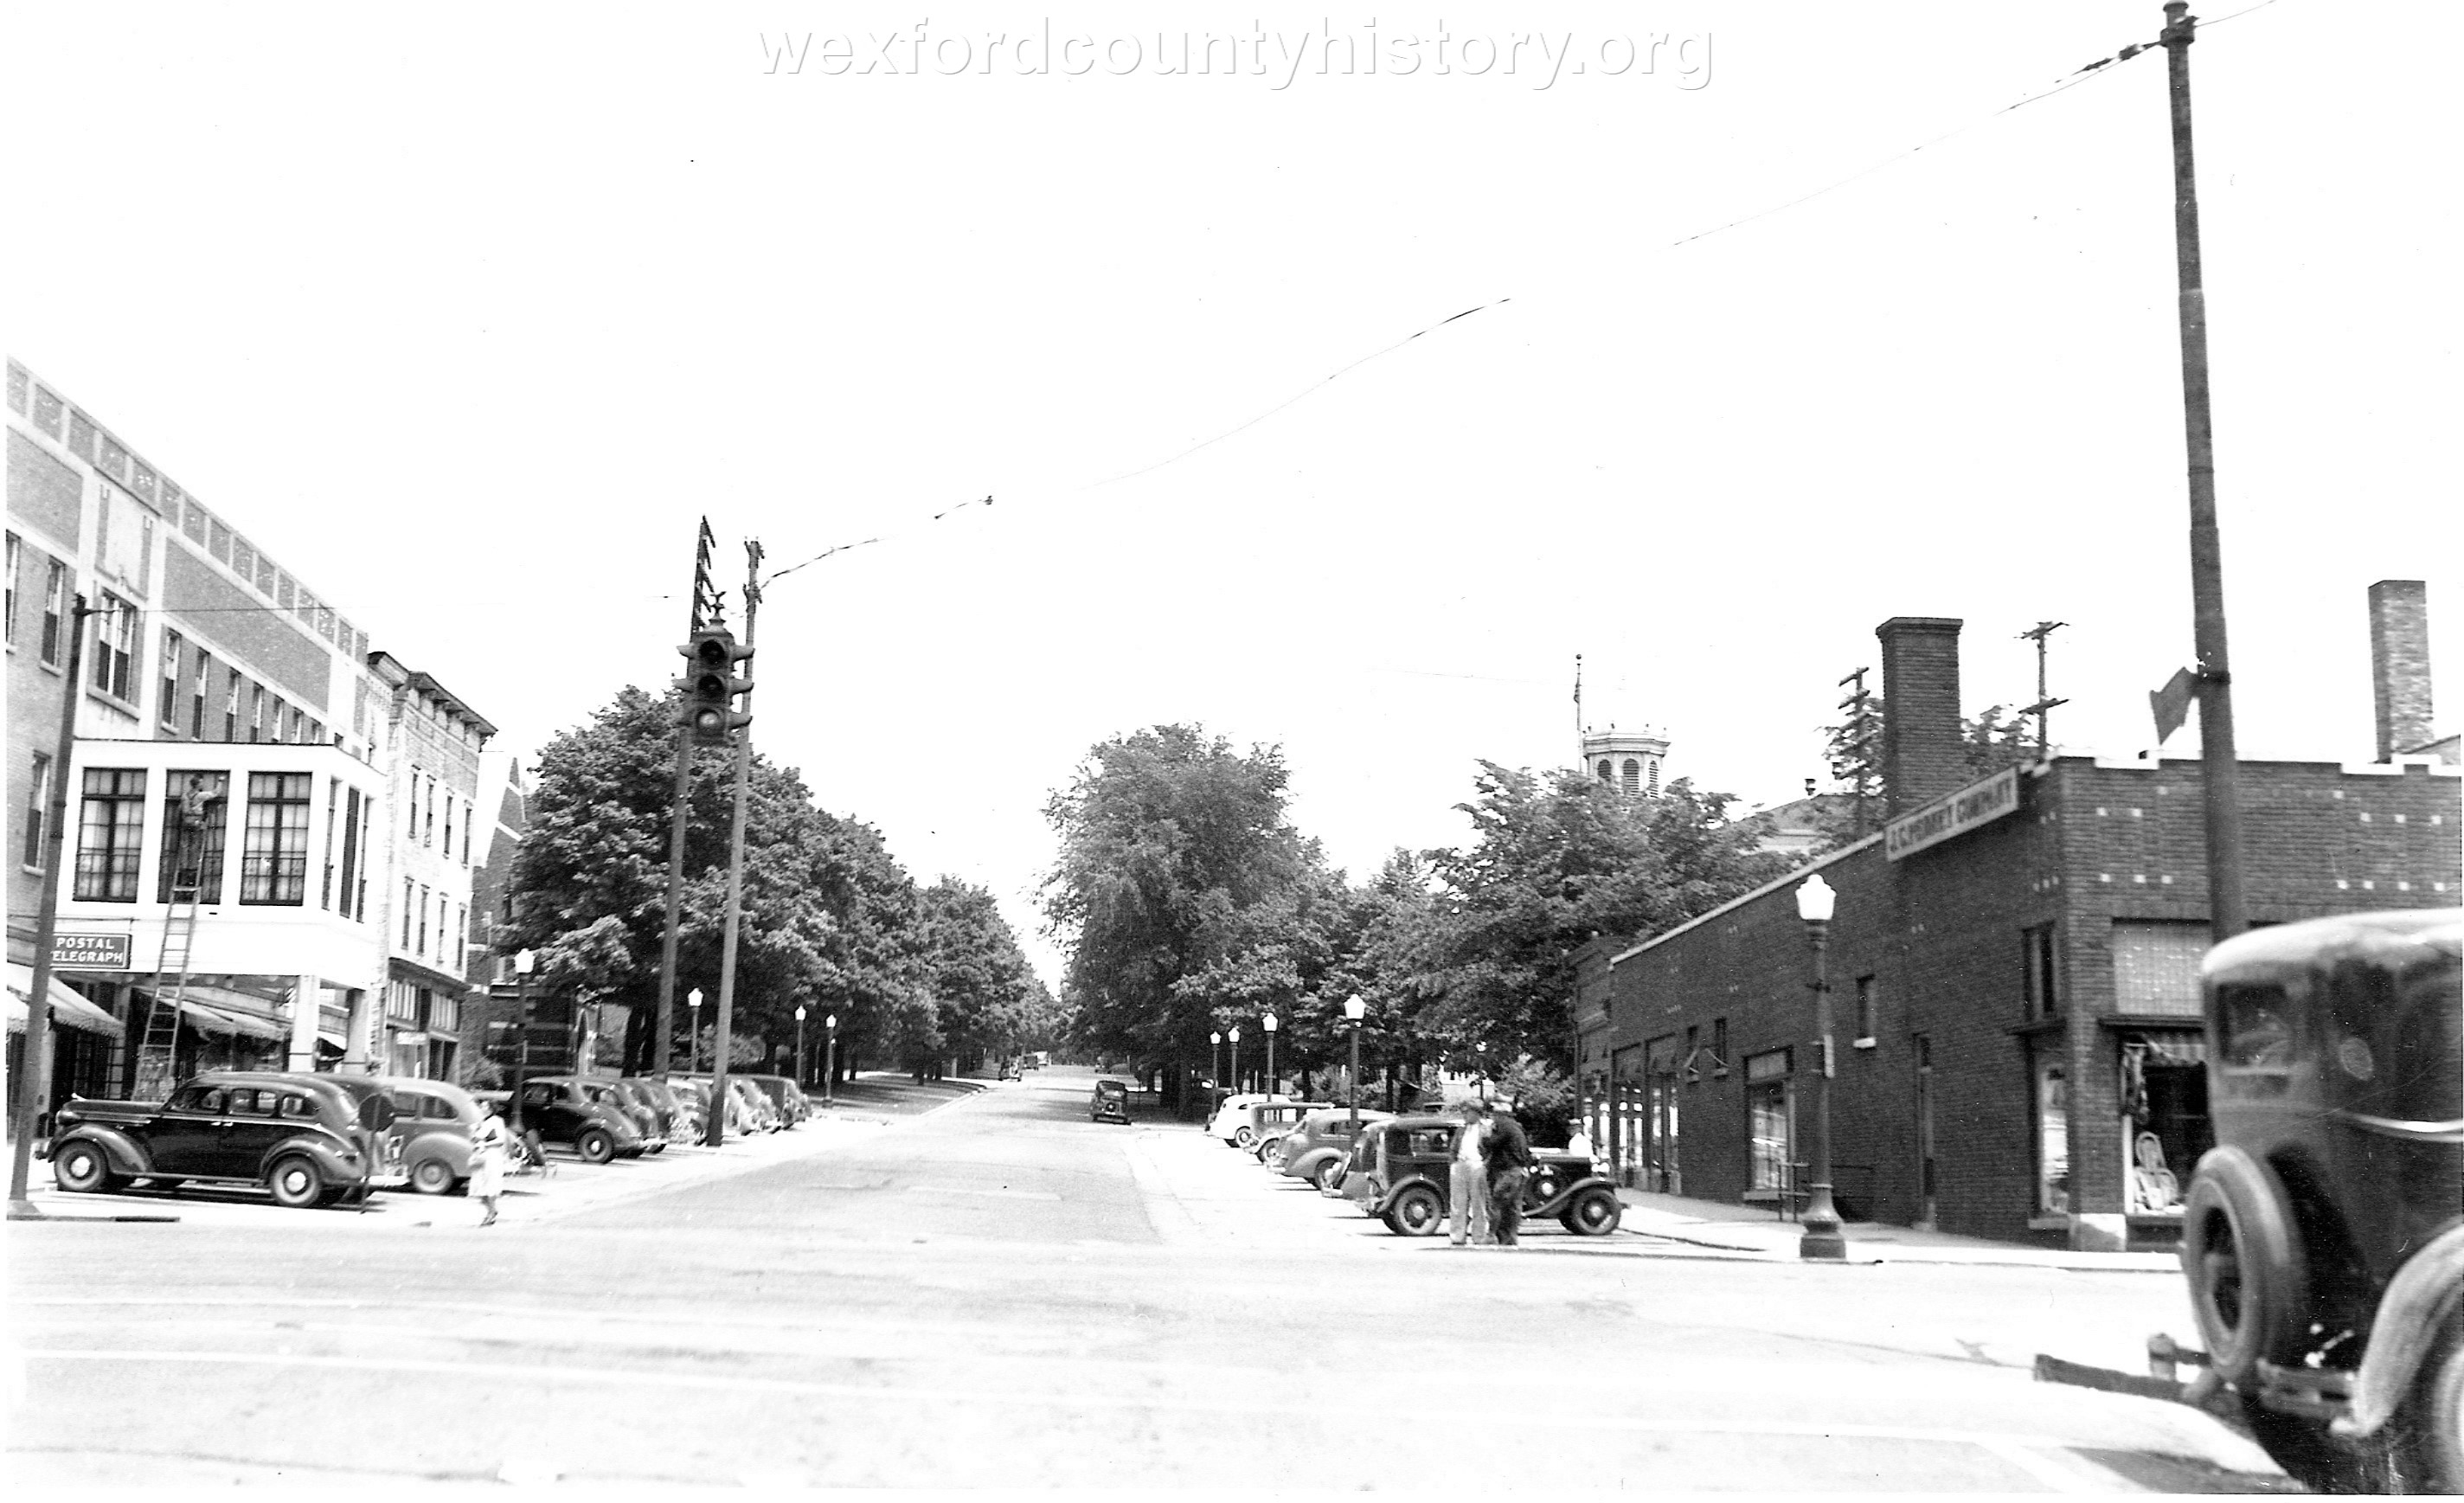 East Harris Street, 1937